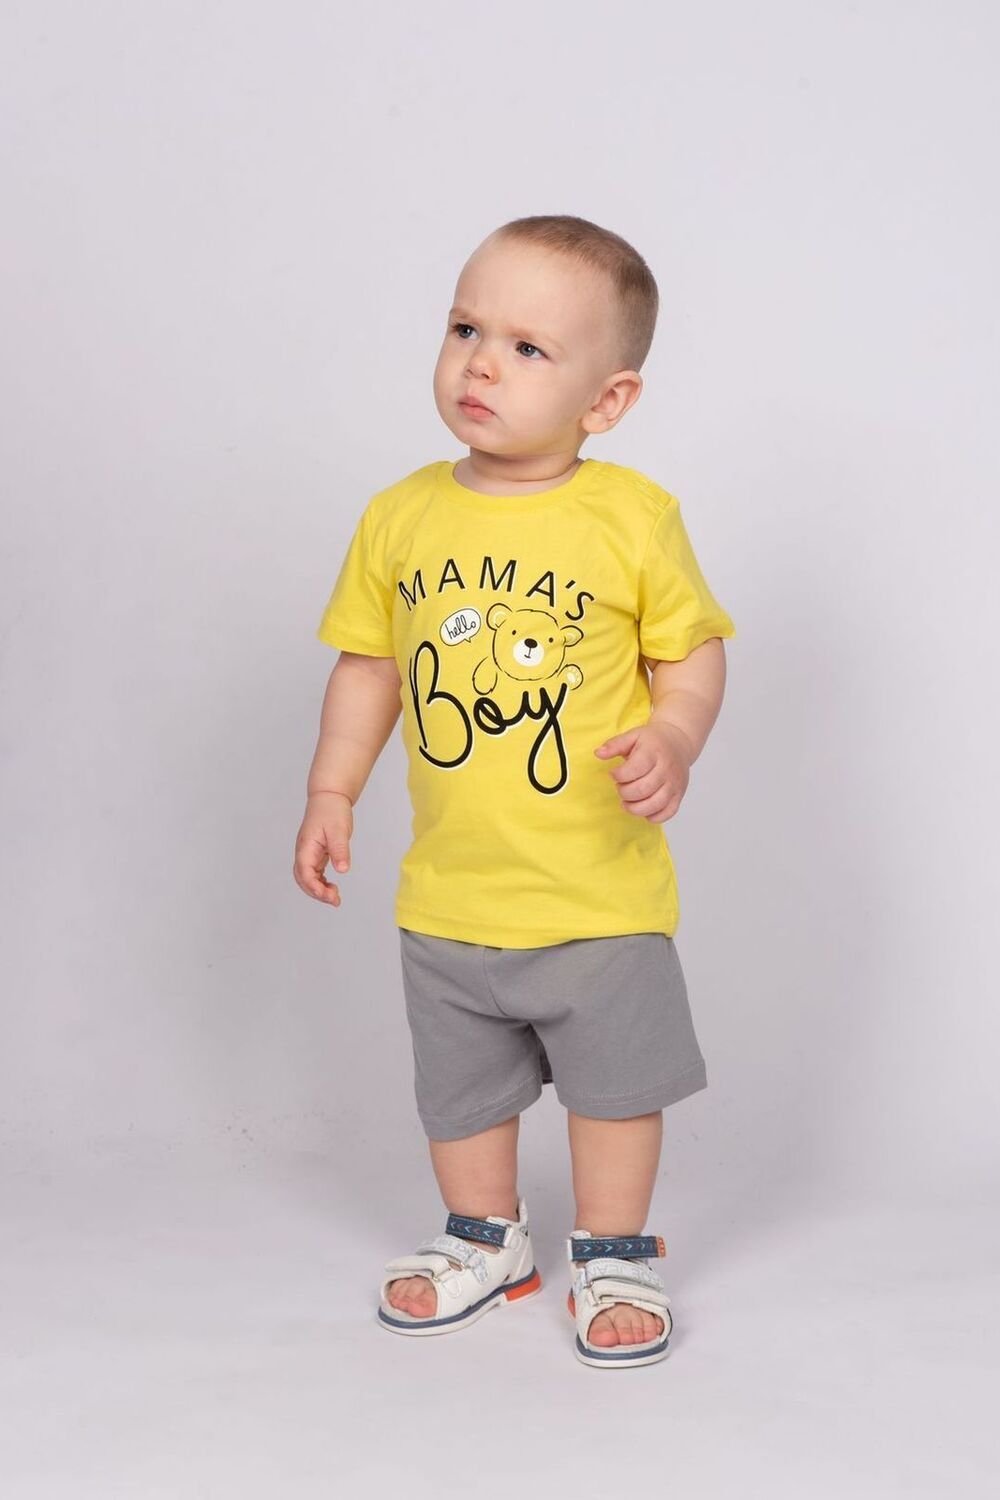 Комплект для мальчика (футболка+шорты) 42107 (М) - желтый/серый